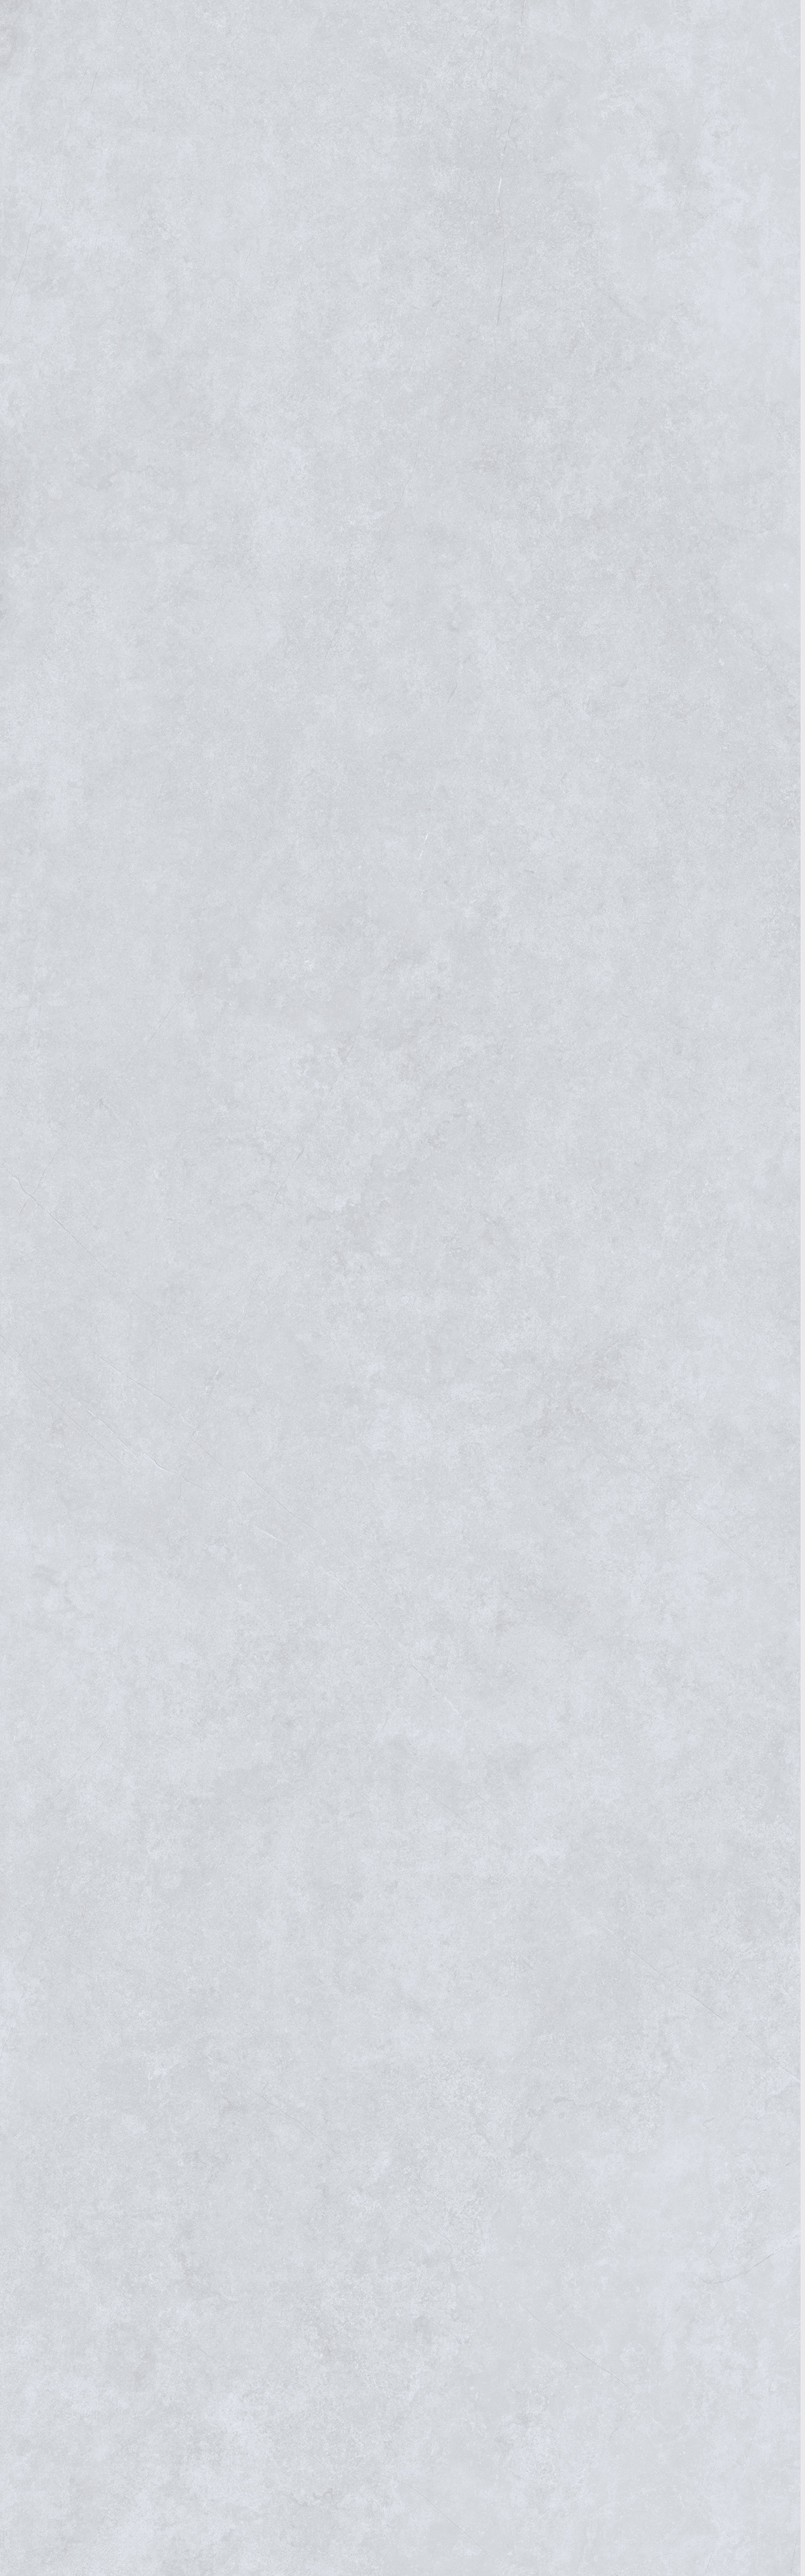 帕里斯特白灰 M8269W63LG产品图